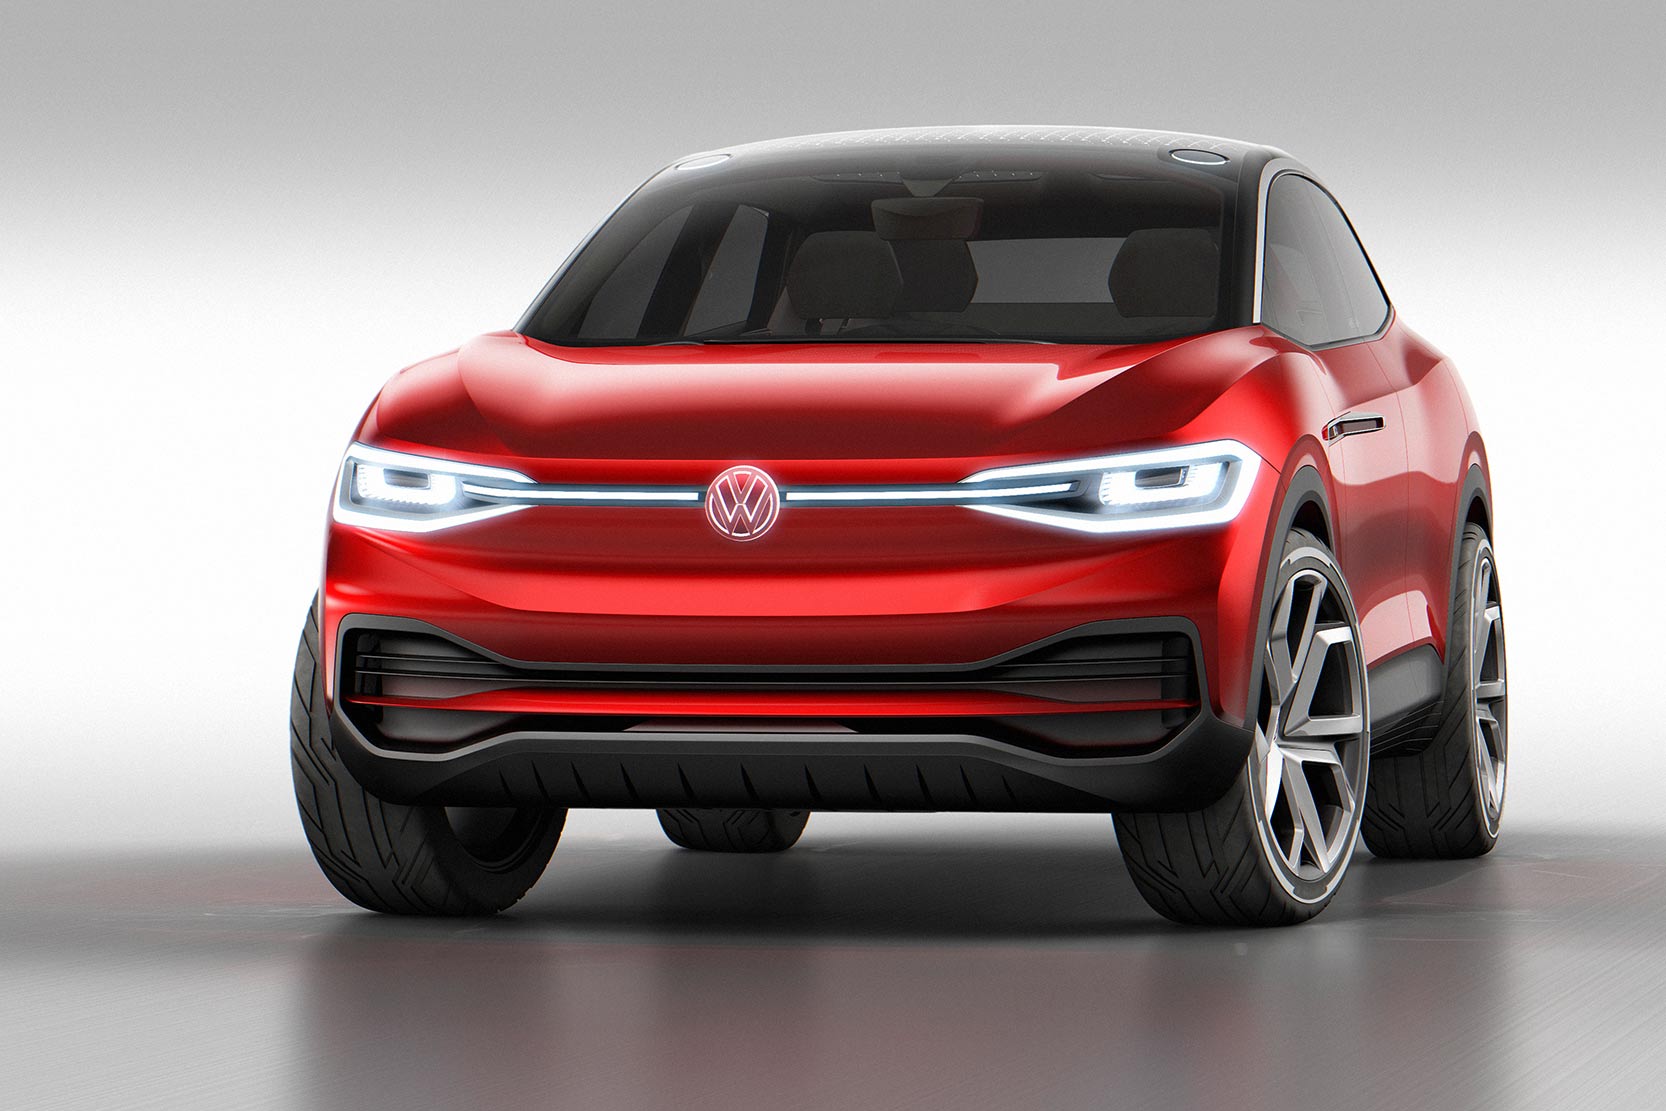 Image principale de l'actu: Volkswagen i d crozz concept un suv coupe et electrique 